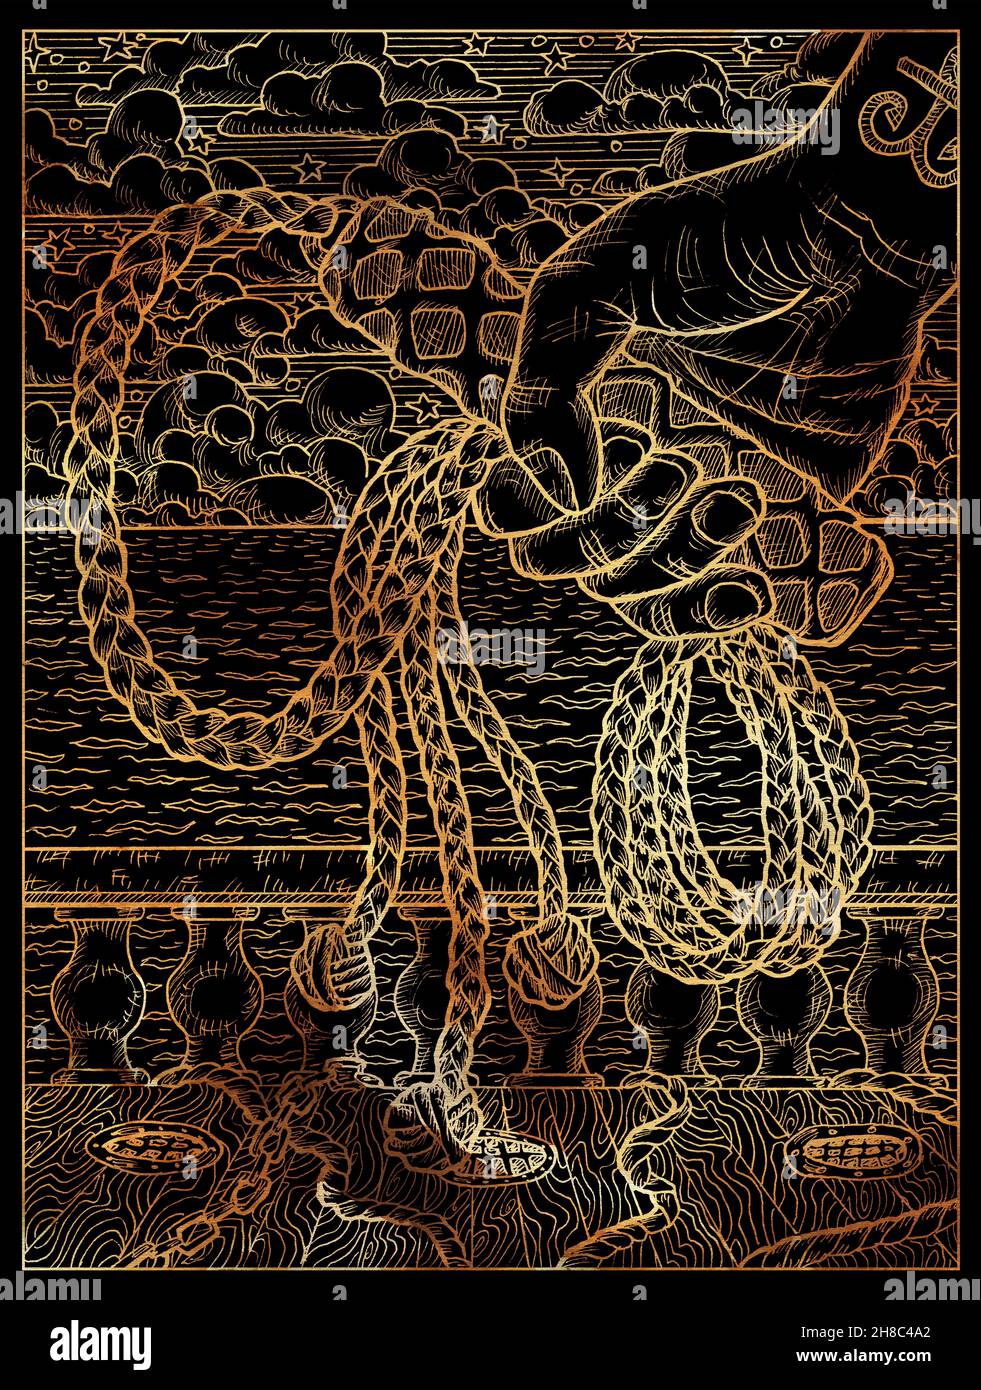 Illustration en noir et or avec main tenant le fouet contre le fond du pont du navire, des cordes et des vagues de mer.Dessins vintage, concept marin, colorin Banque D'Images